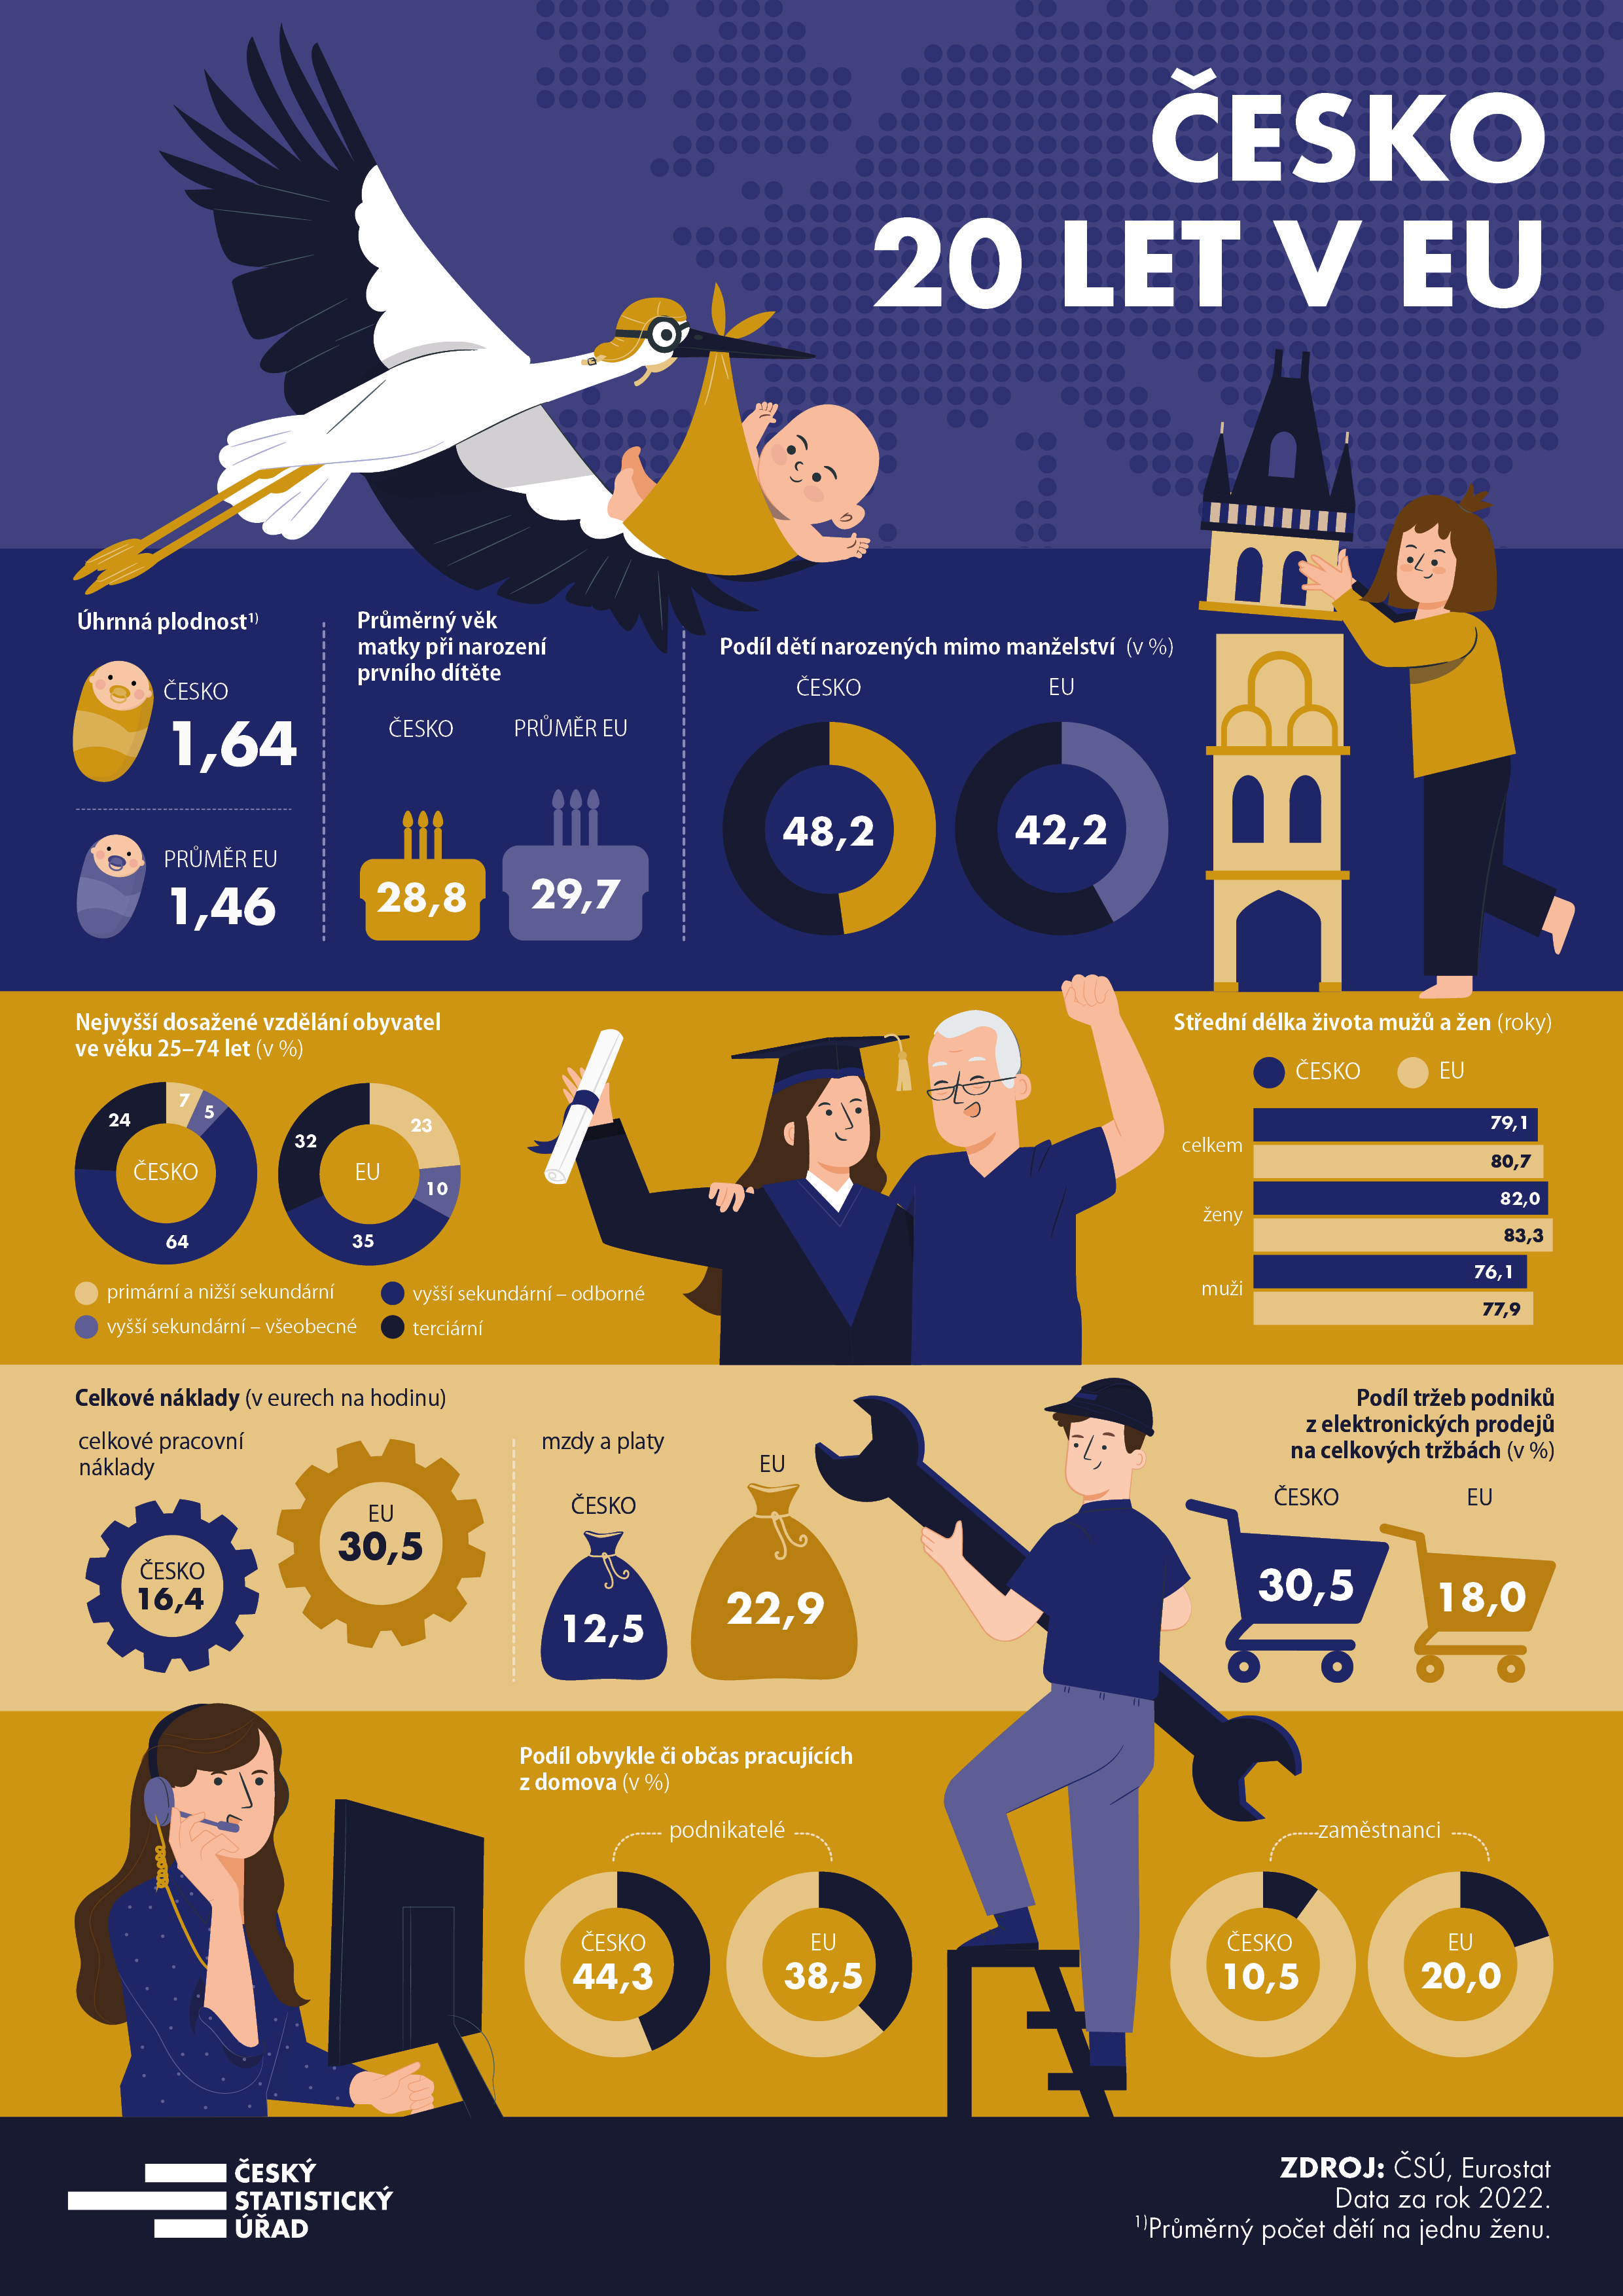 R 20 let v EU - infografiky 